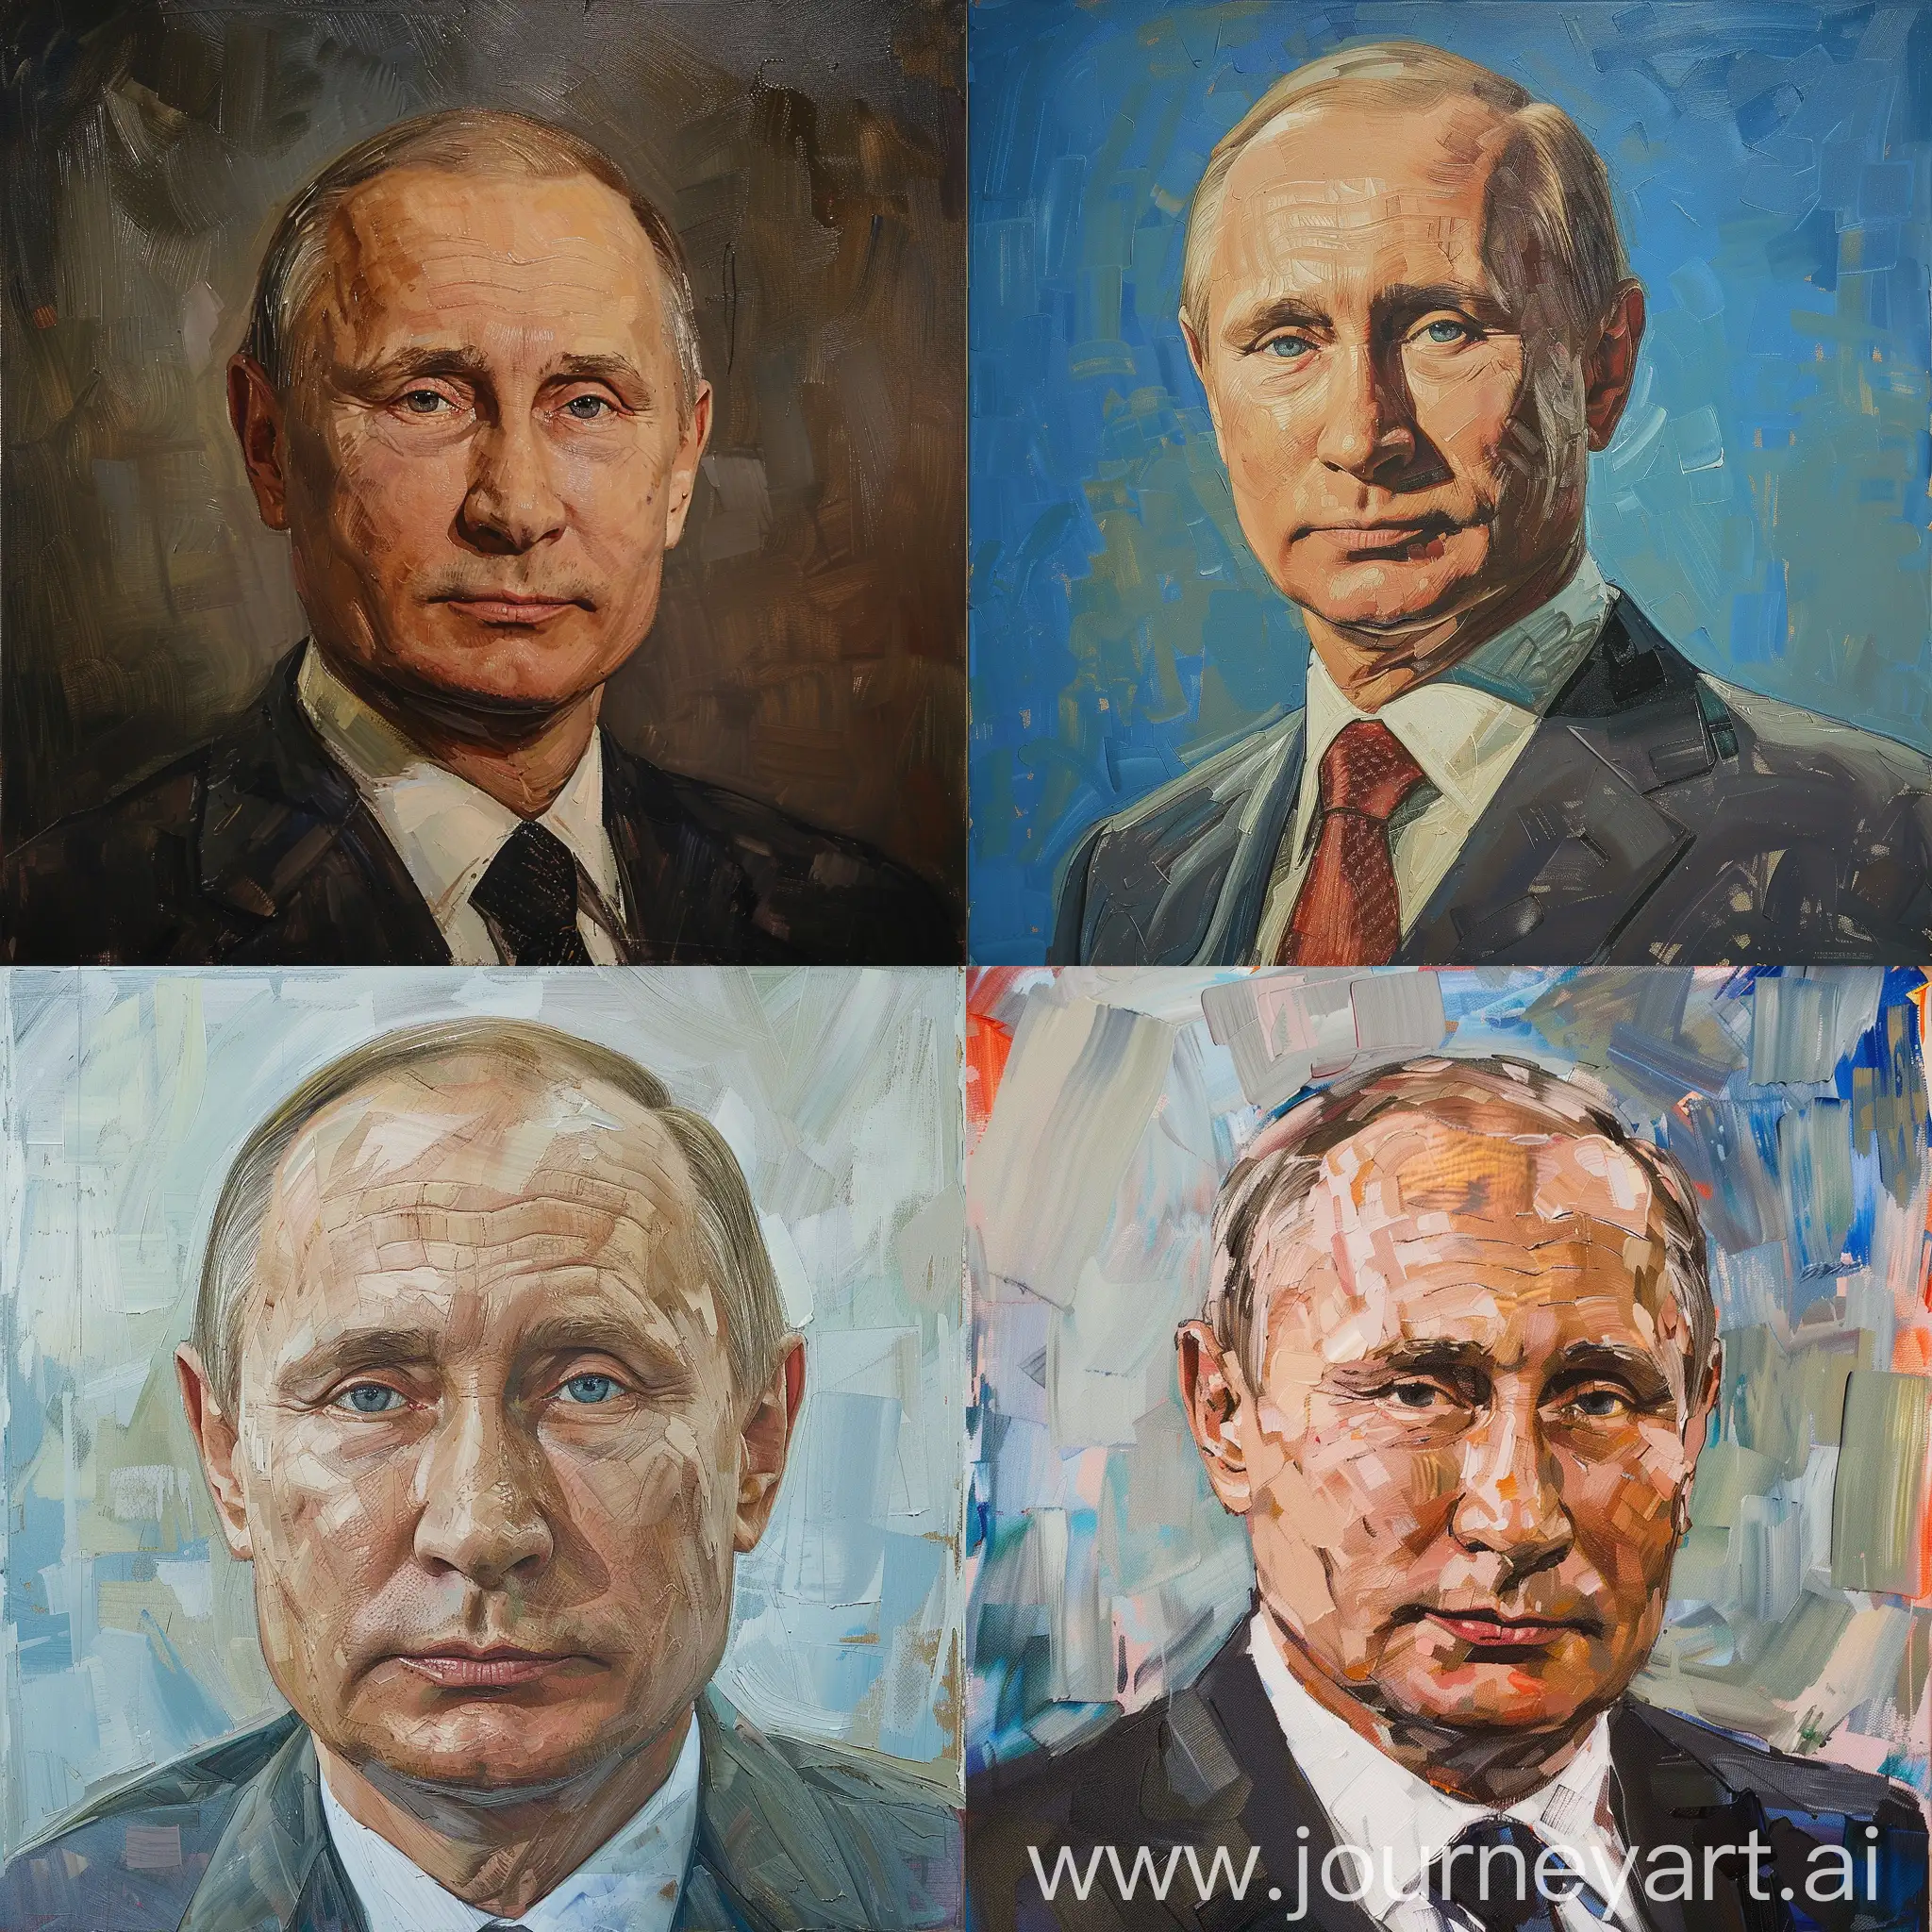 Russian-President-Vladimir-Putin-in-Formal-Attire